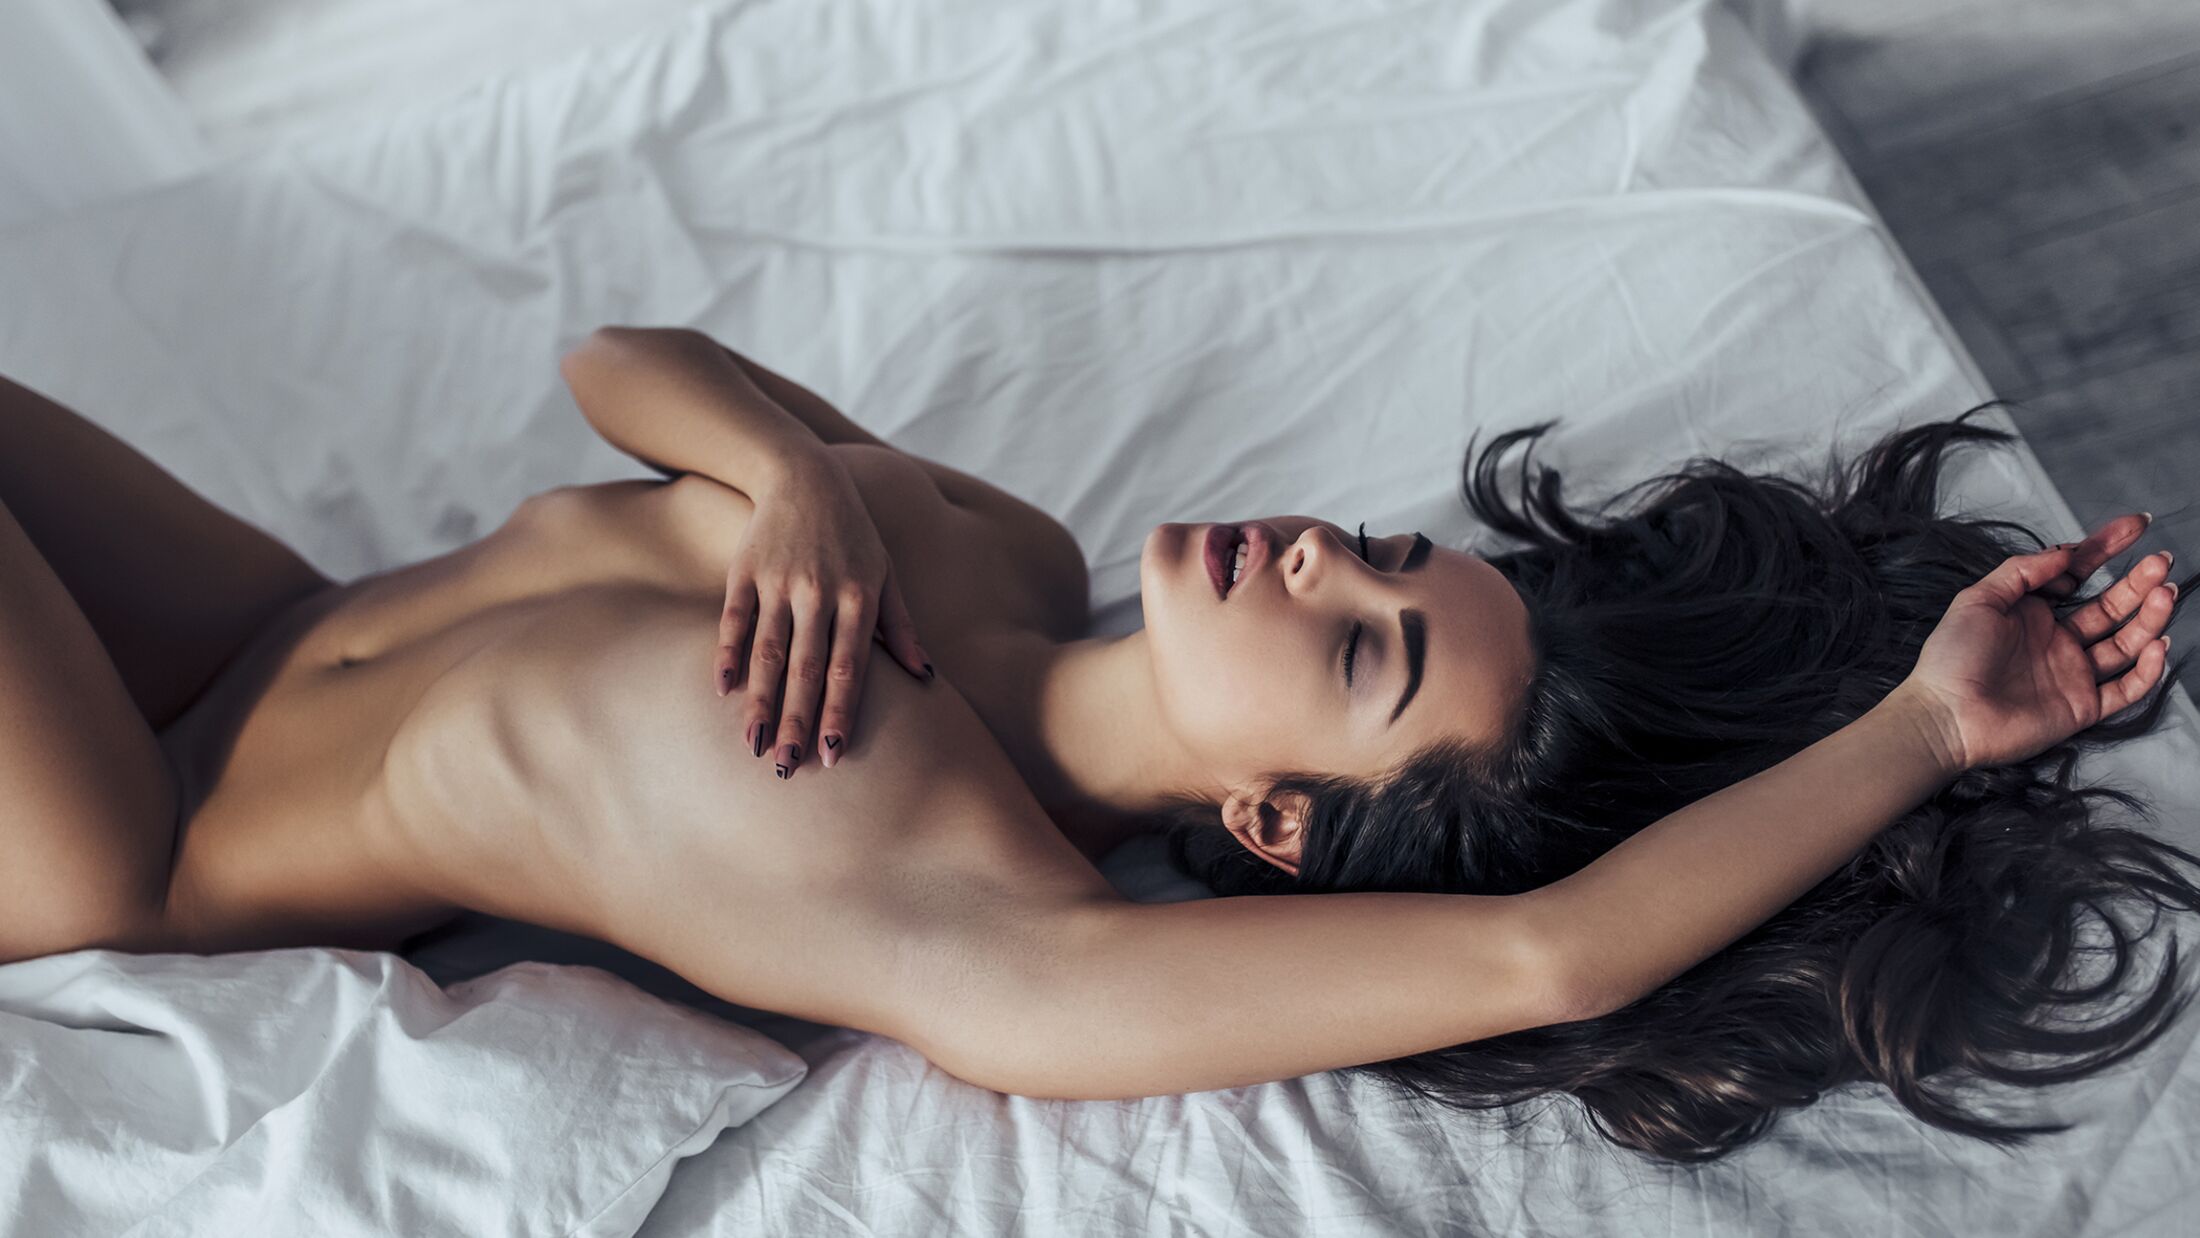 Sexfantasien 7 Top-Fantasien der Frauen MENS HEALTH